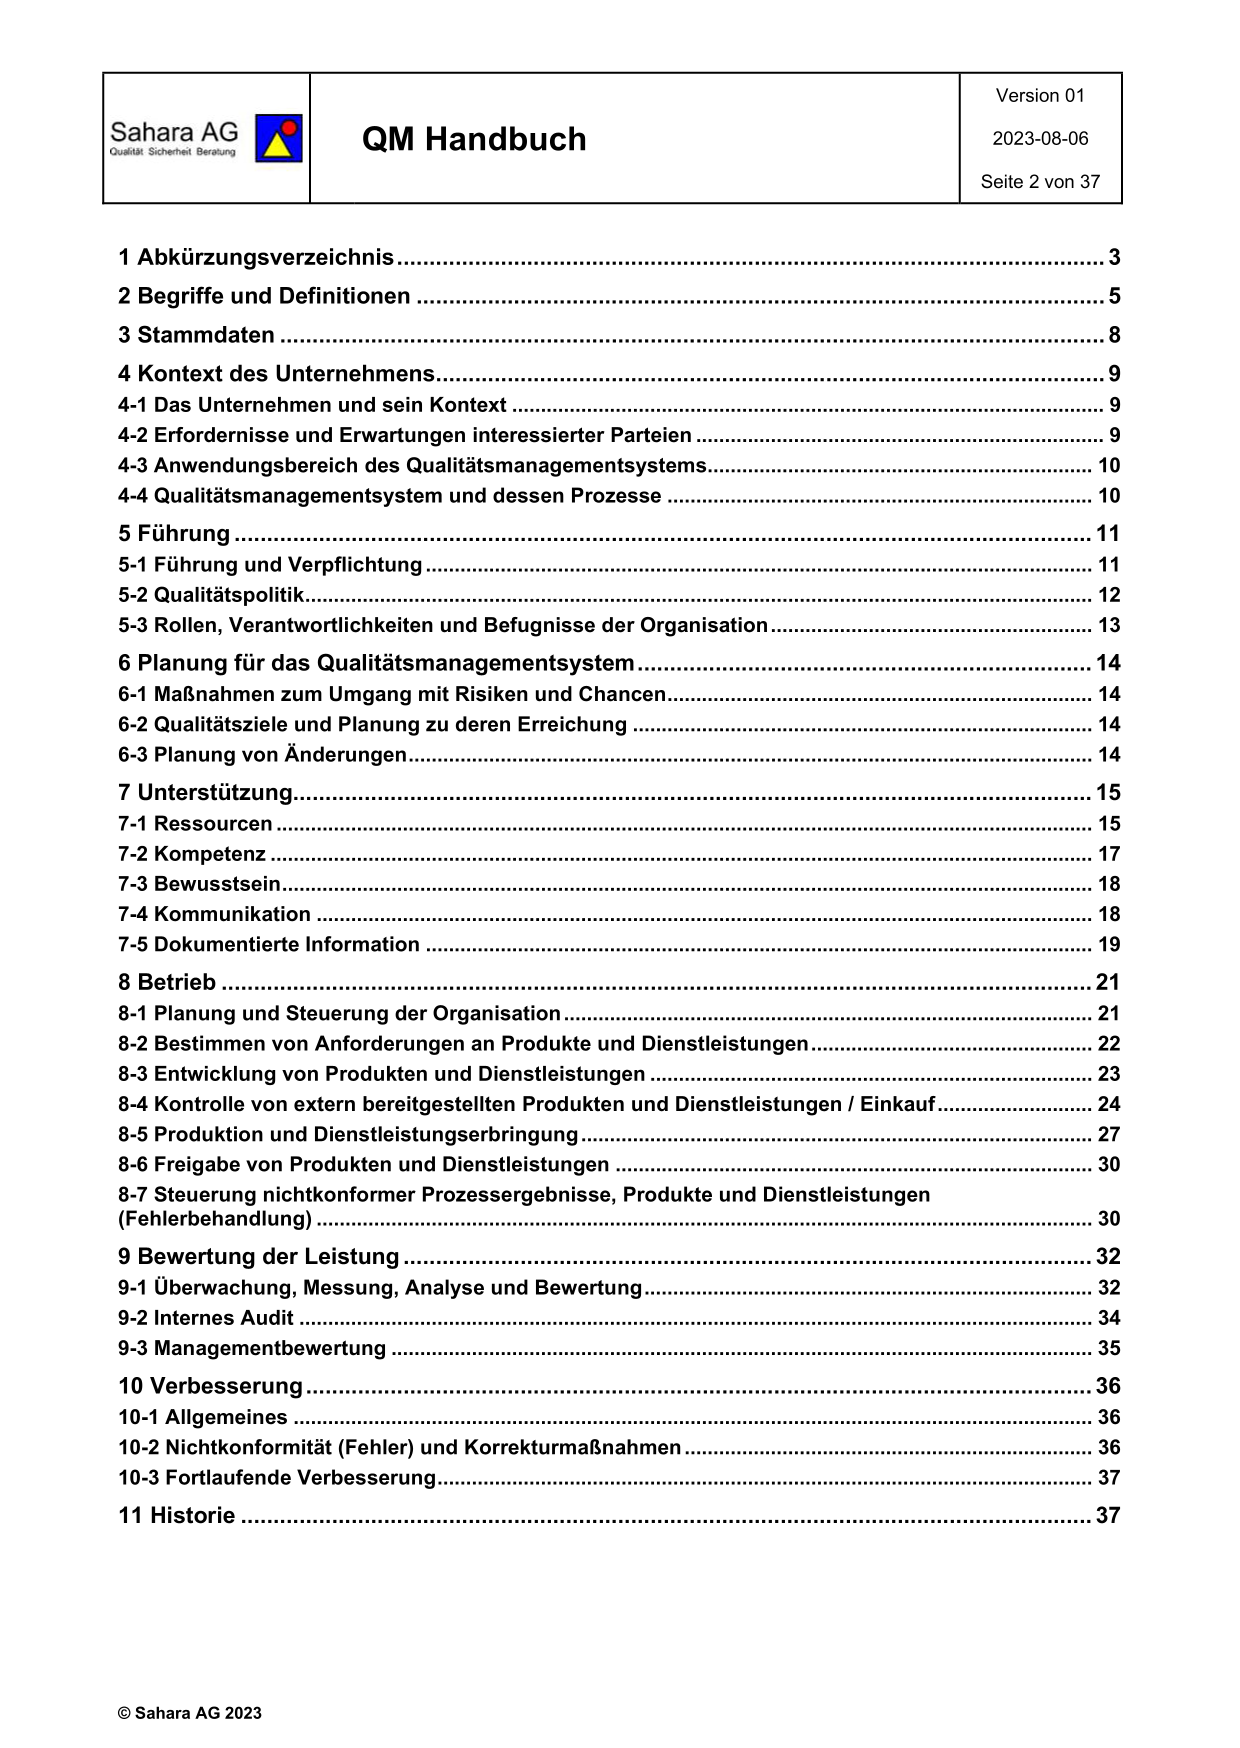 Inhaltsverzeichnis QMS nach Gliederung DIN EN ISO 9001:2015 PDF-Datei zum Download